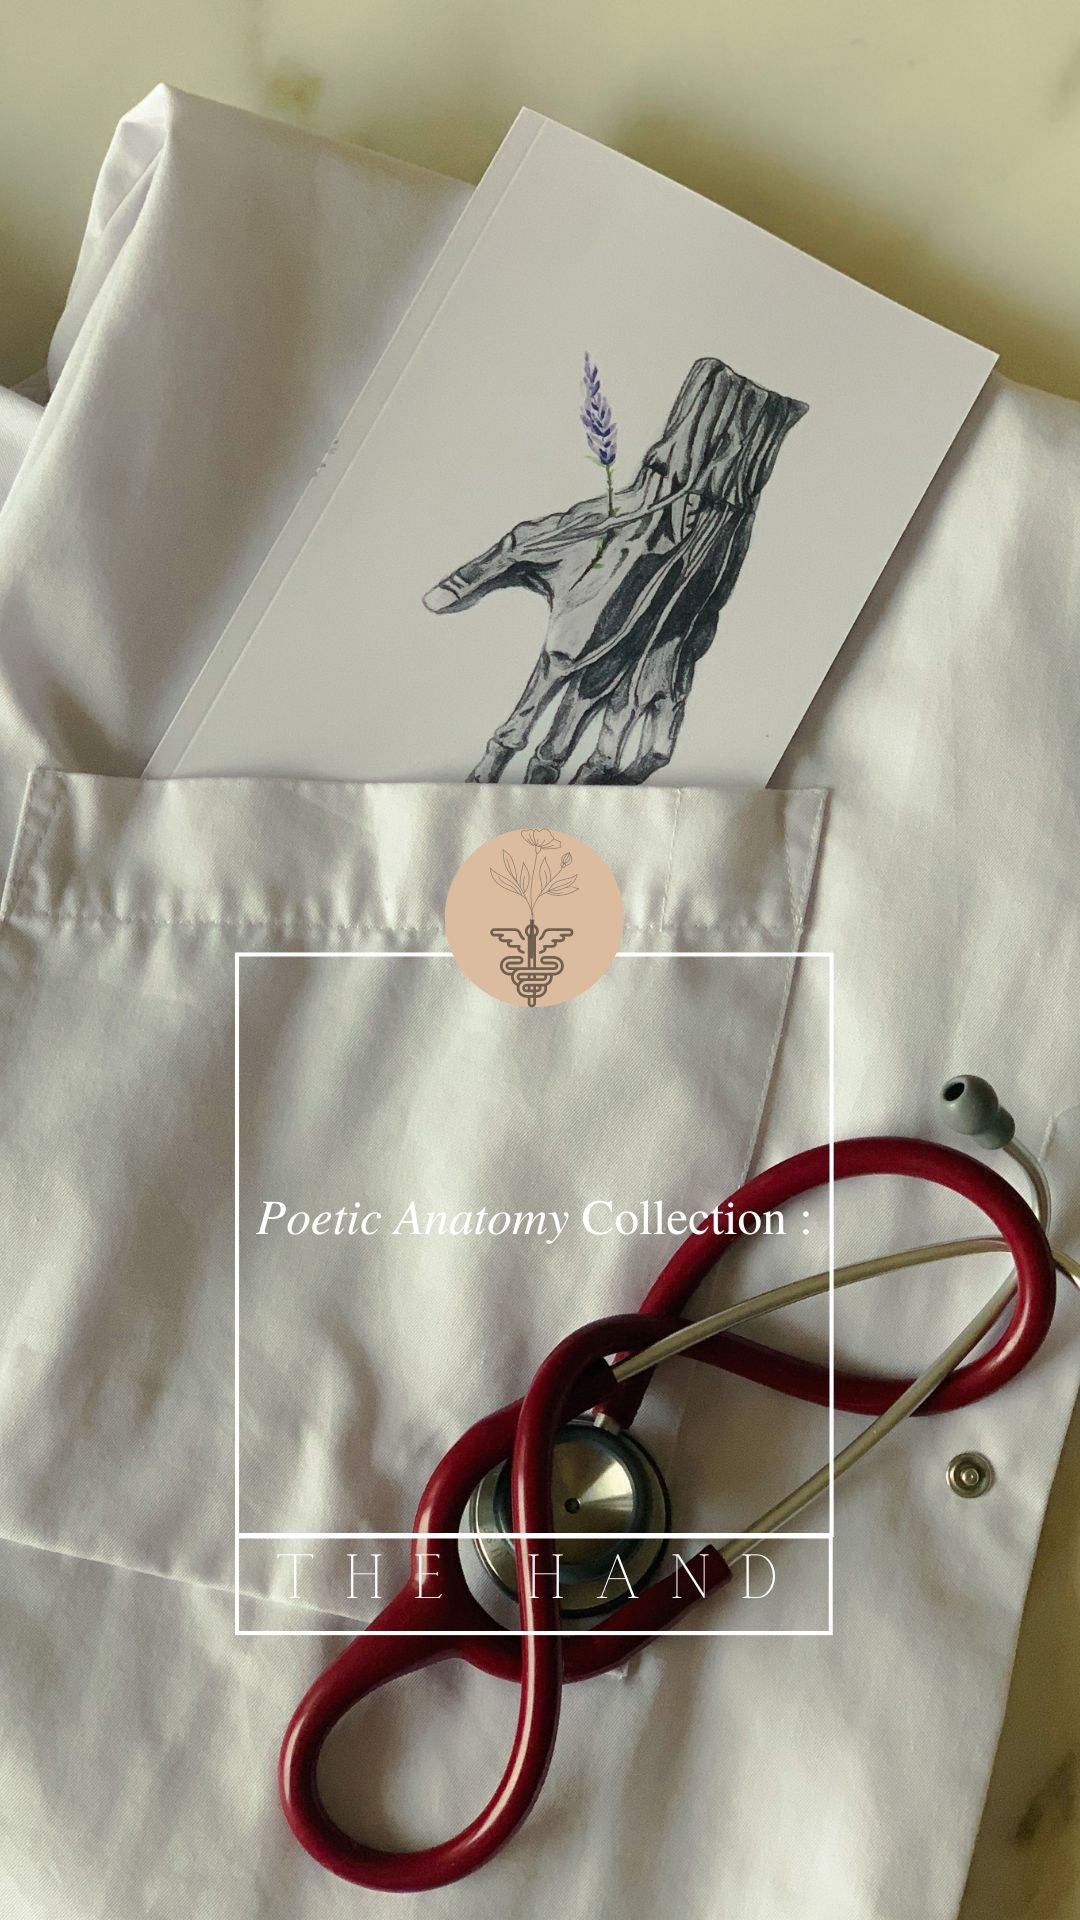 Carnet de notes - Notebook - Anatomie Poétique : La main 🌾